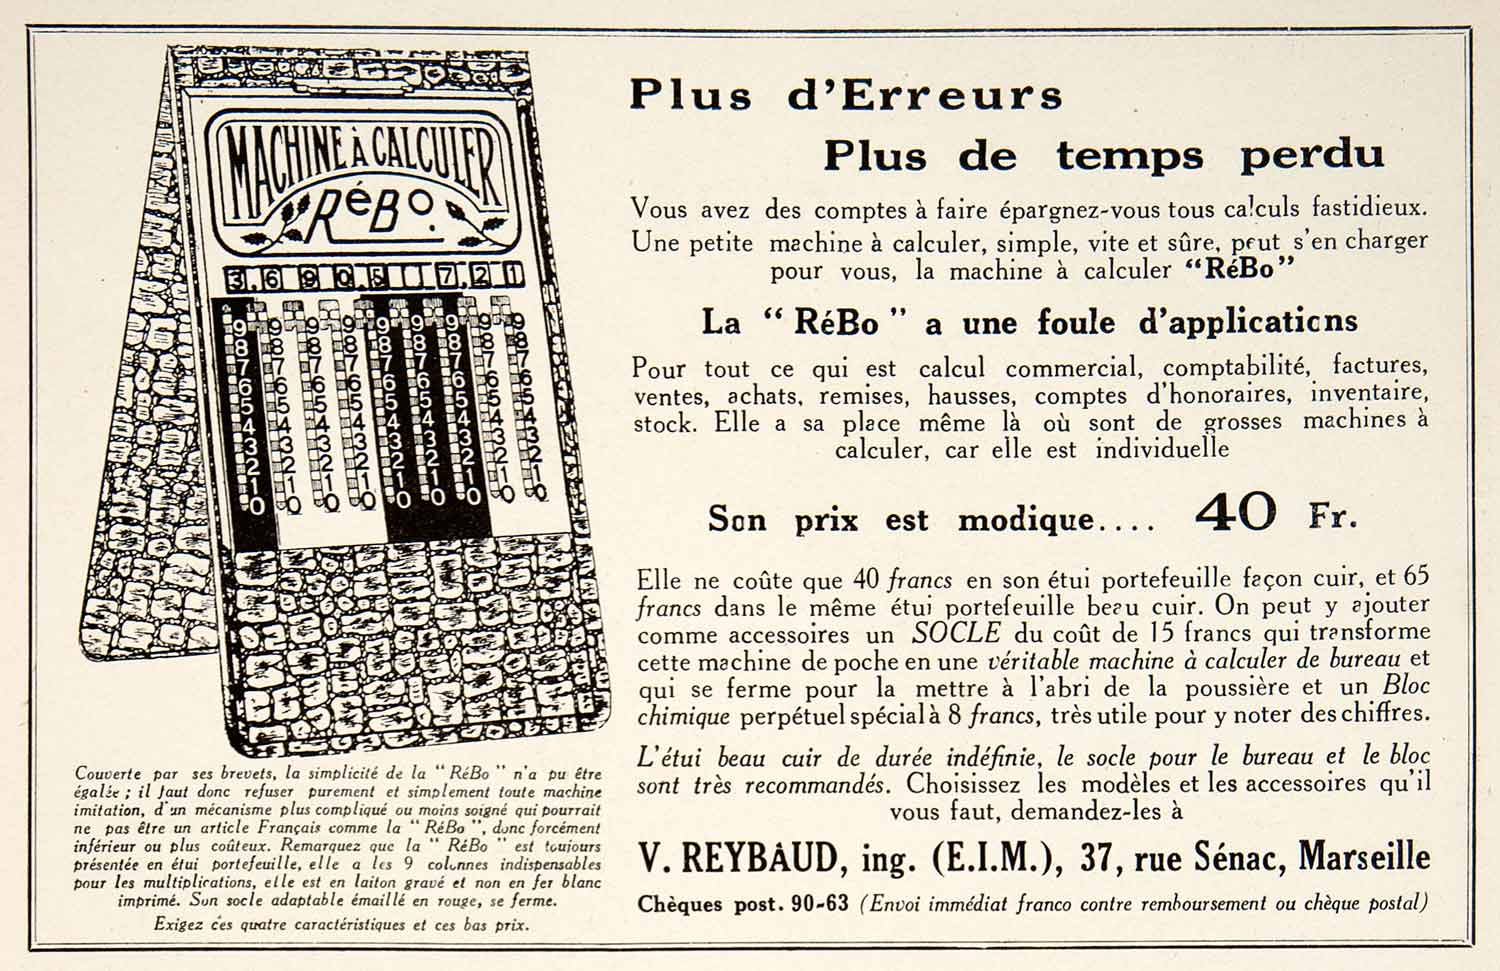 1928 Ad French ReBo Calculator Machine V. Reybaud 37 Rue Senac Marseille VEN5